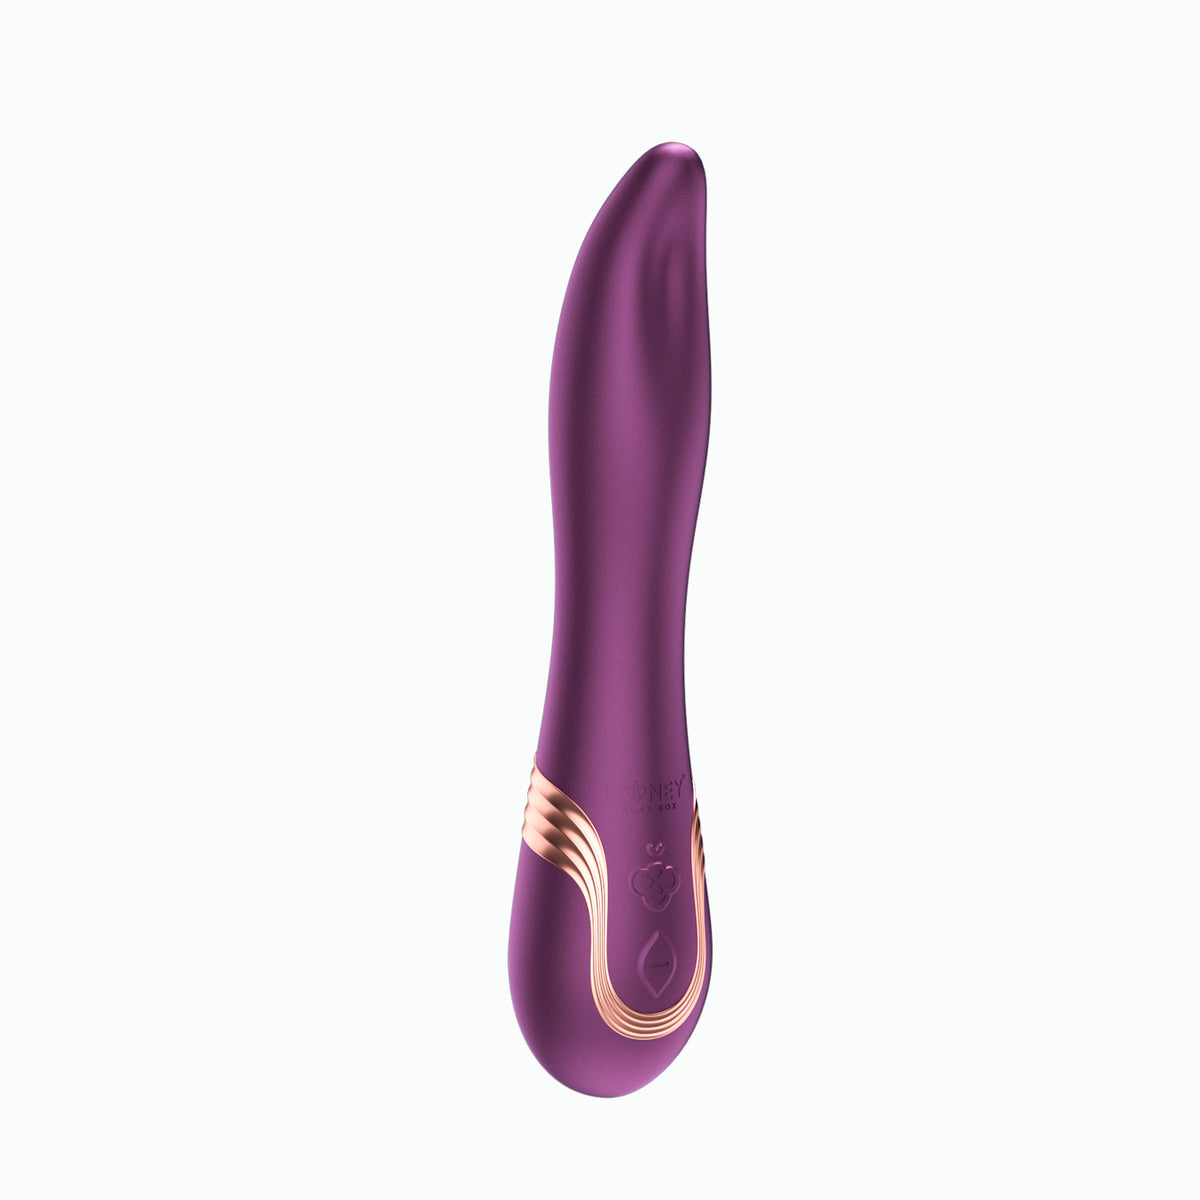 Fling - Vibrador para lamer oral controlado por aplicación - Púrpura